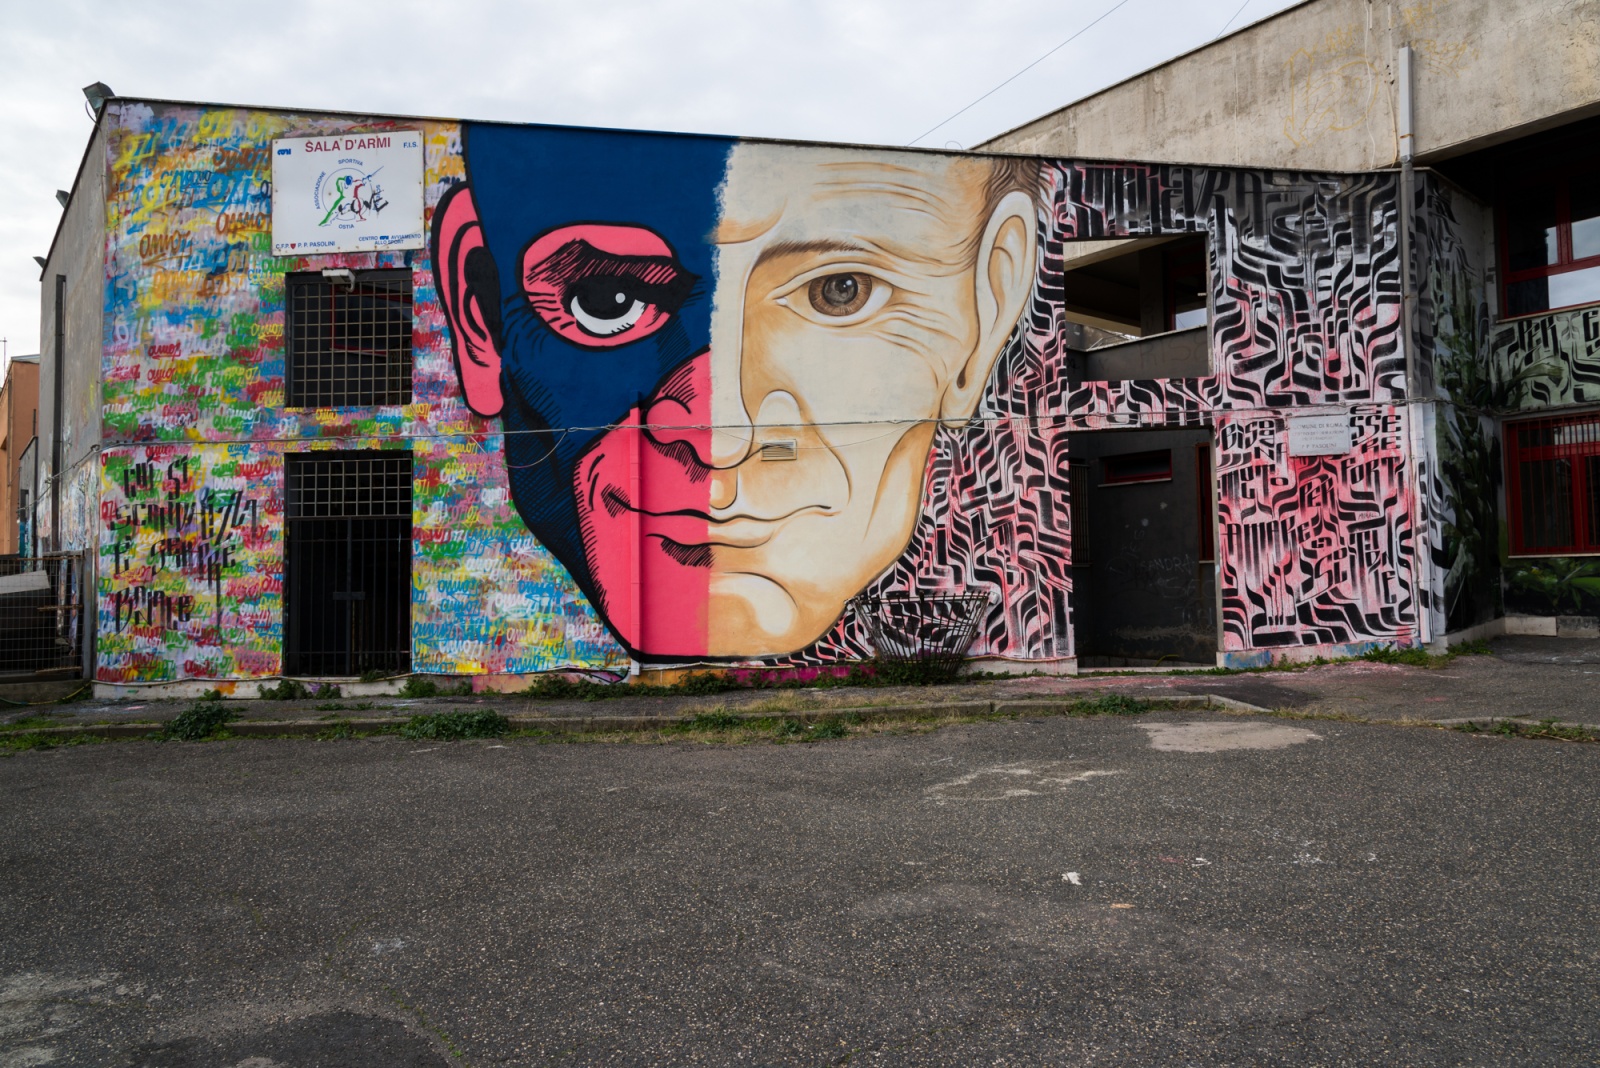 Questo murale è stato realizzato sulla struttura del Centro di Formazione Professionale “Pier Paolo Pasolini”. Gli autori sono Omino71 e Mr.Klevra.